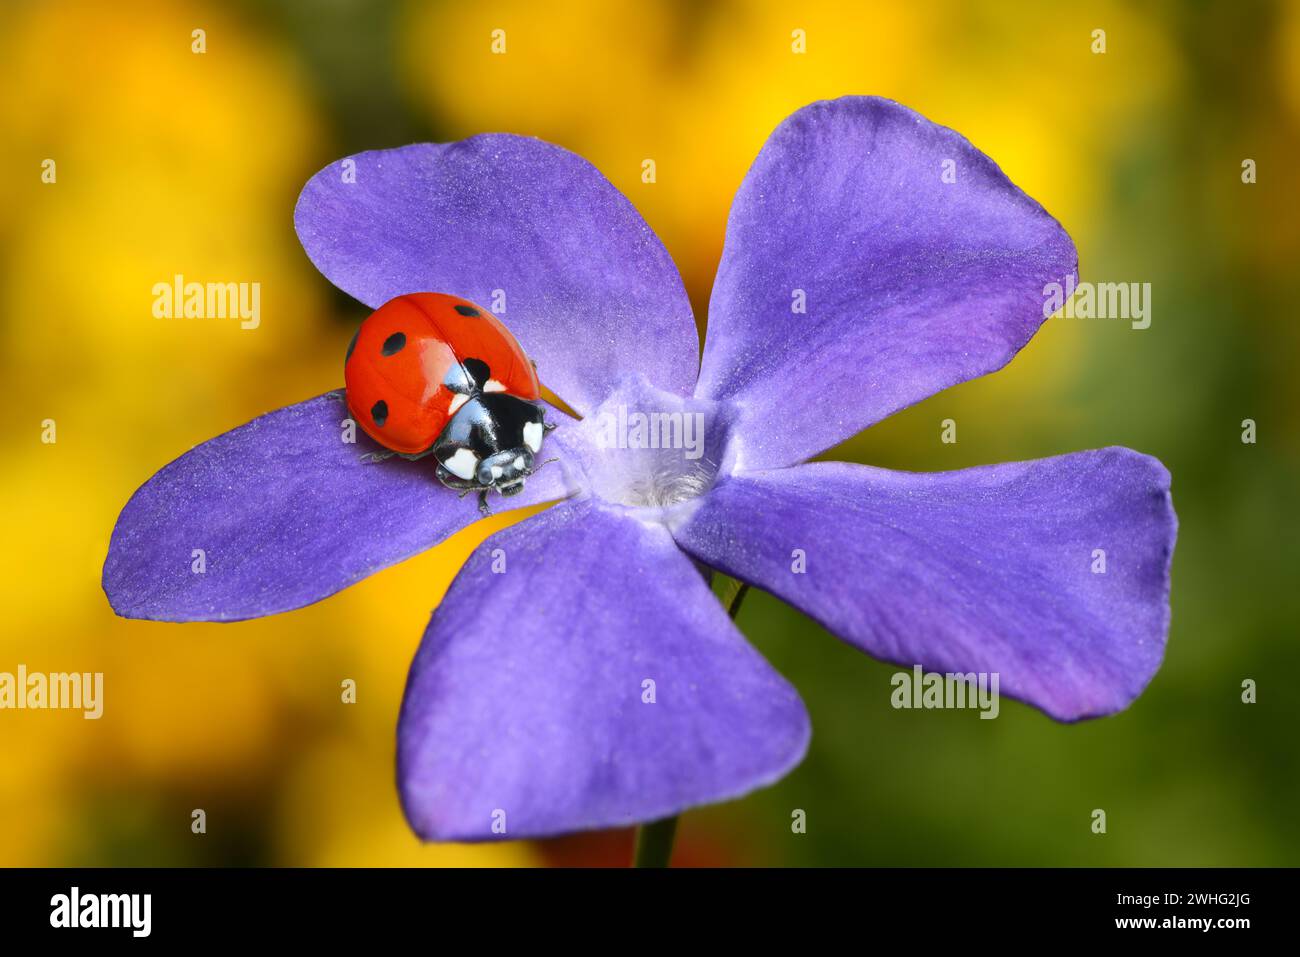 Ladybugs on blossom Stock Photo